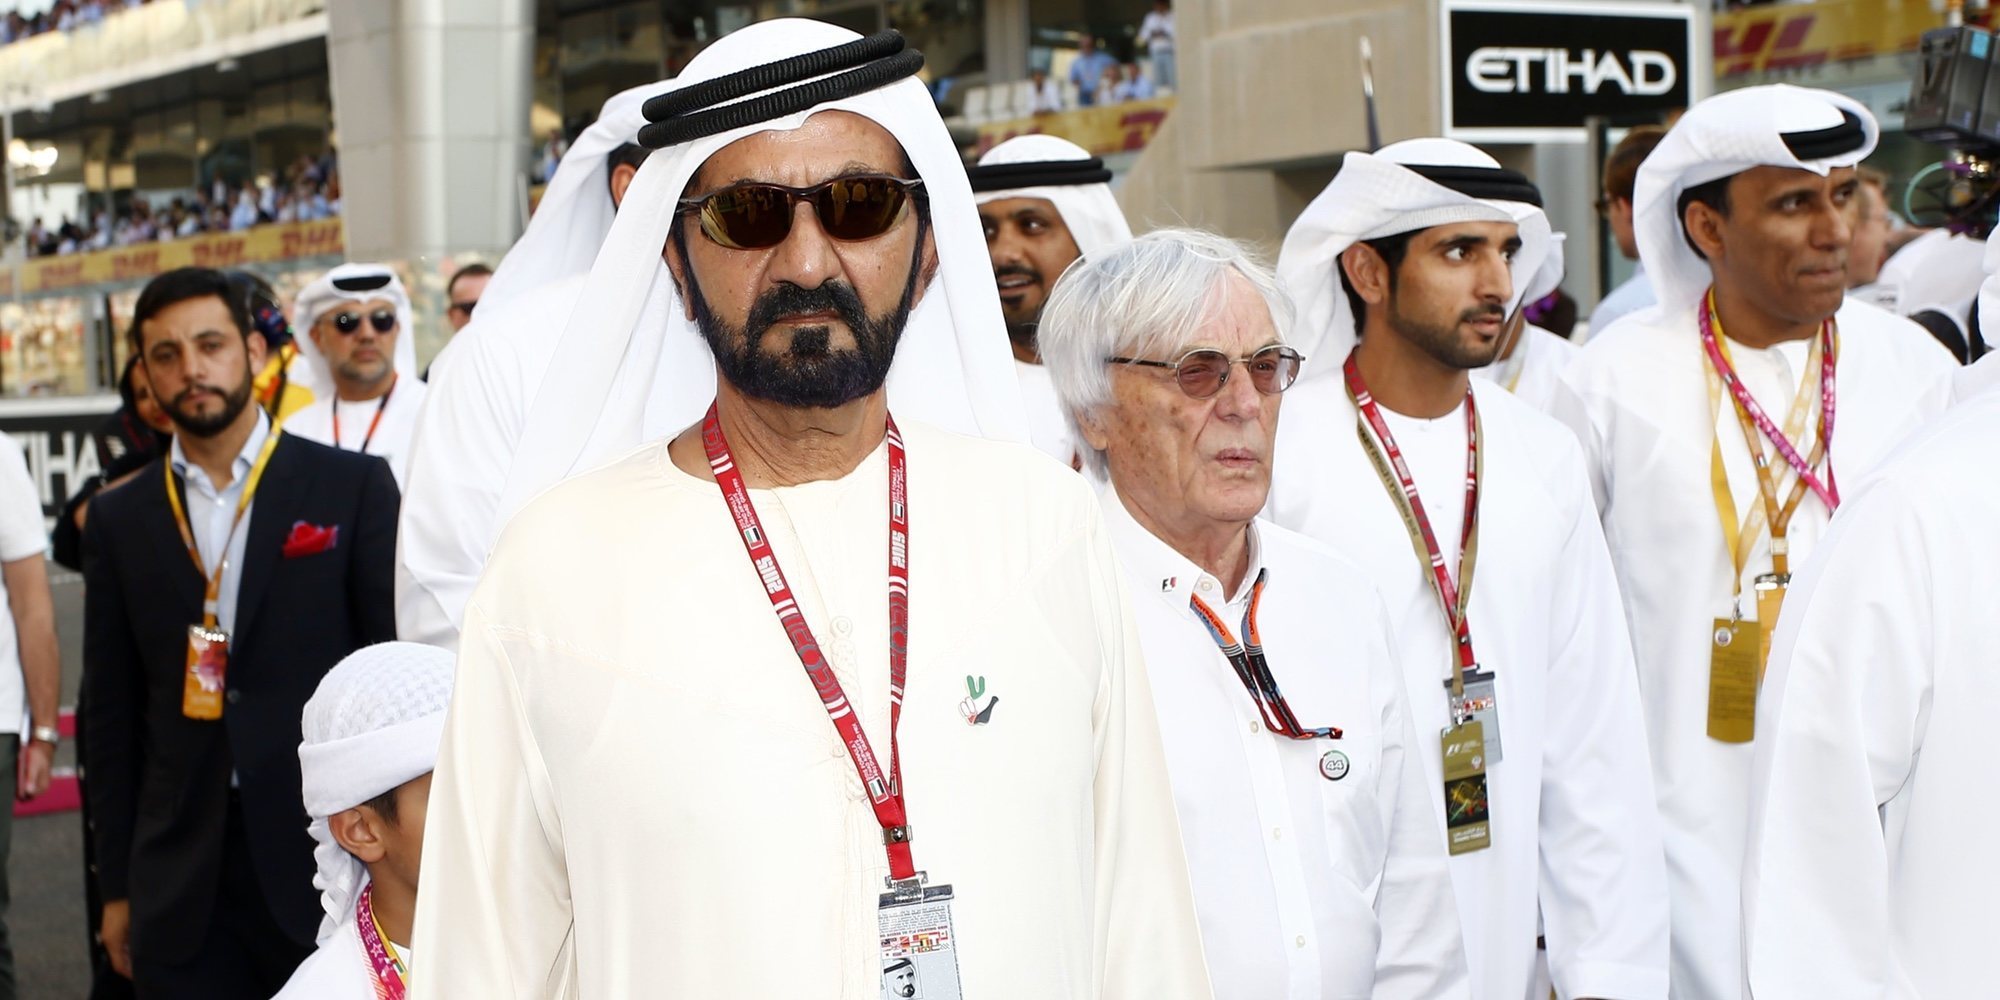 ¿Quién es Mohamed bin Rashid Al Maktum? conoce la lujosa y polémica vida del Emir de Dubai